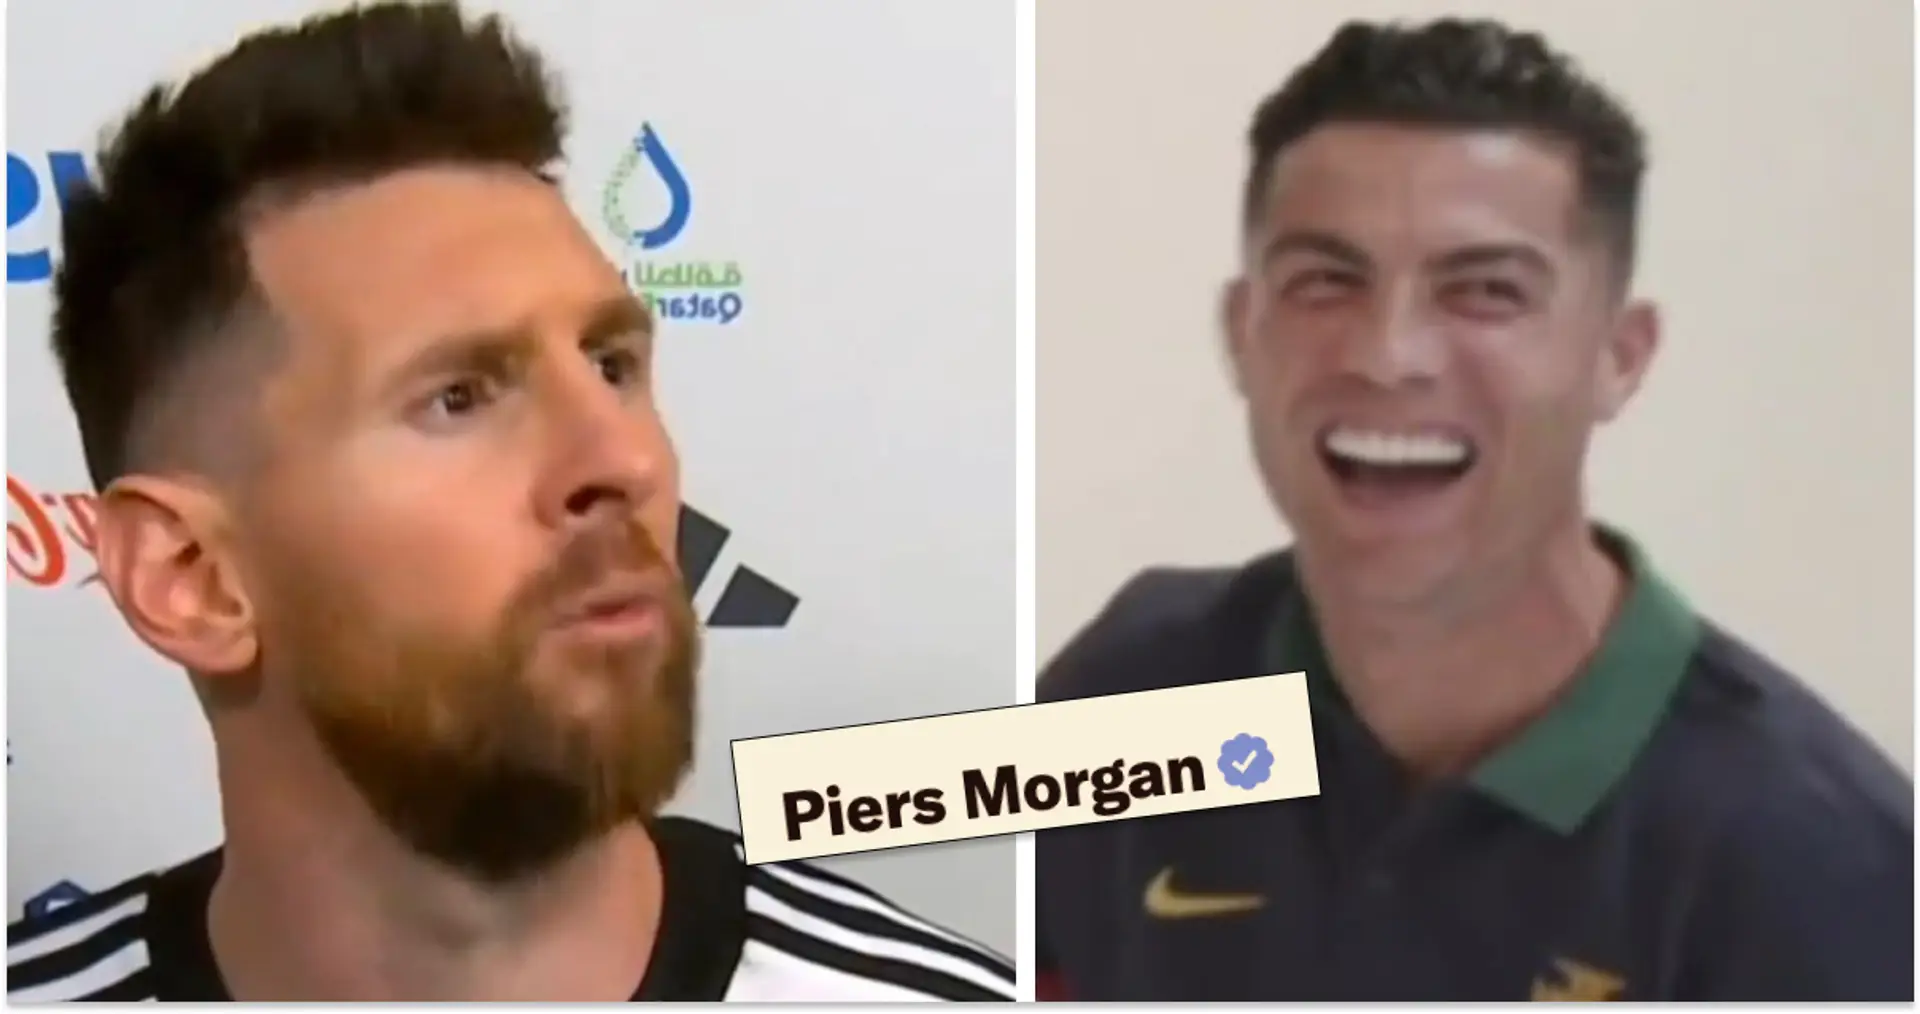 "Messi peut-être 4e, Cristiano le meilleur de tous les temps": Piers Morgan continue d'appeler Ronaldo le GOAT après que l'Argentine ait atteint la finale de la Coupe du monde